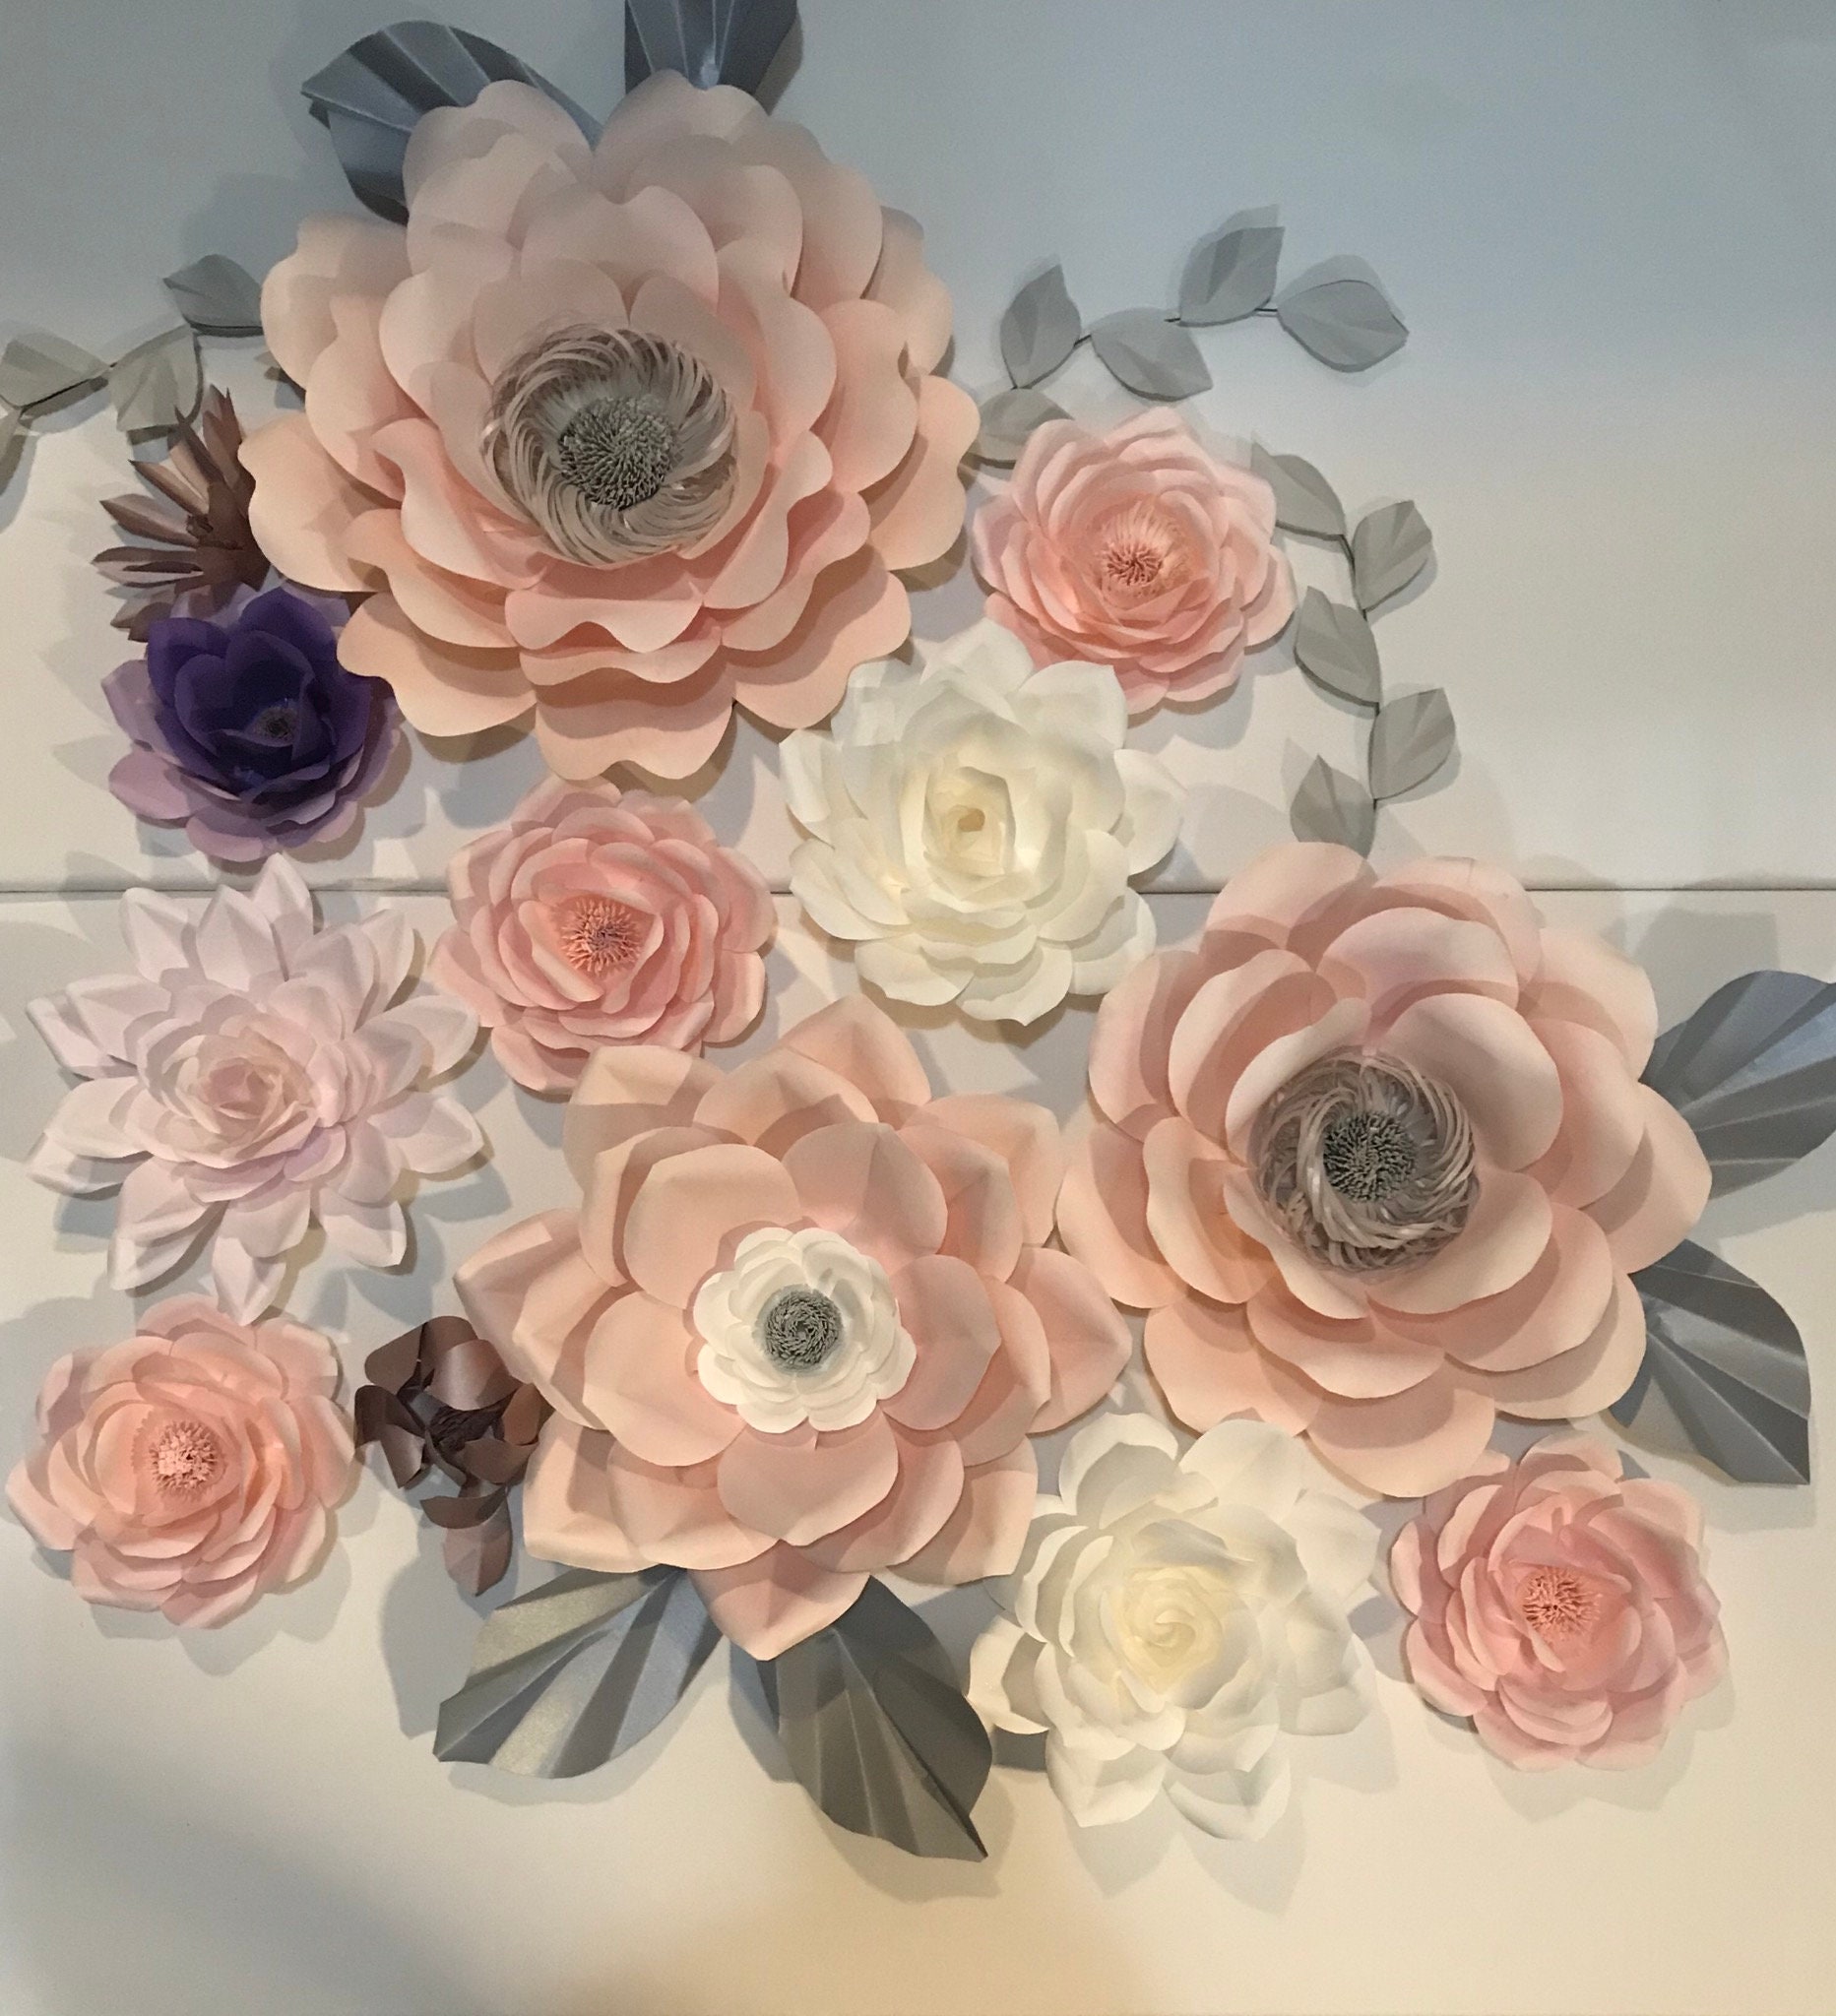 Handmade Beautiful Paper flower backdrop wall decor!! BY ELLE